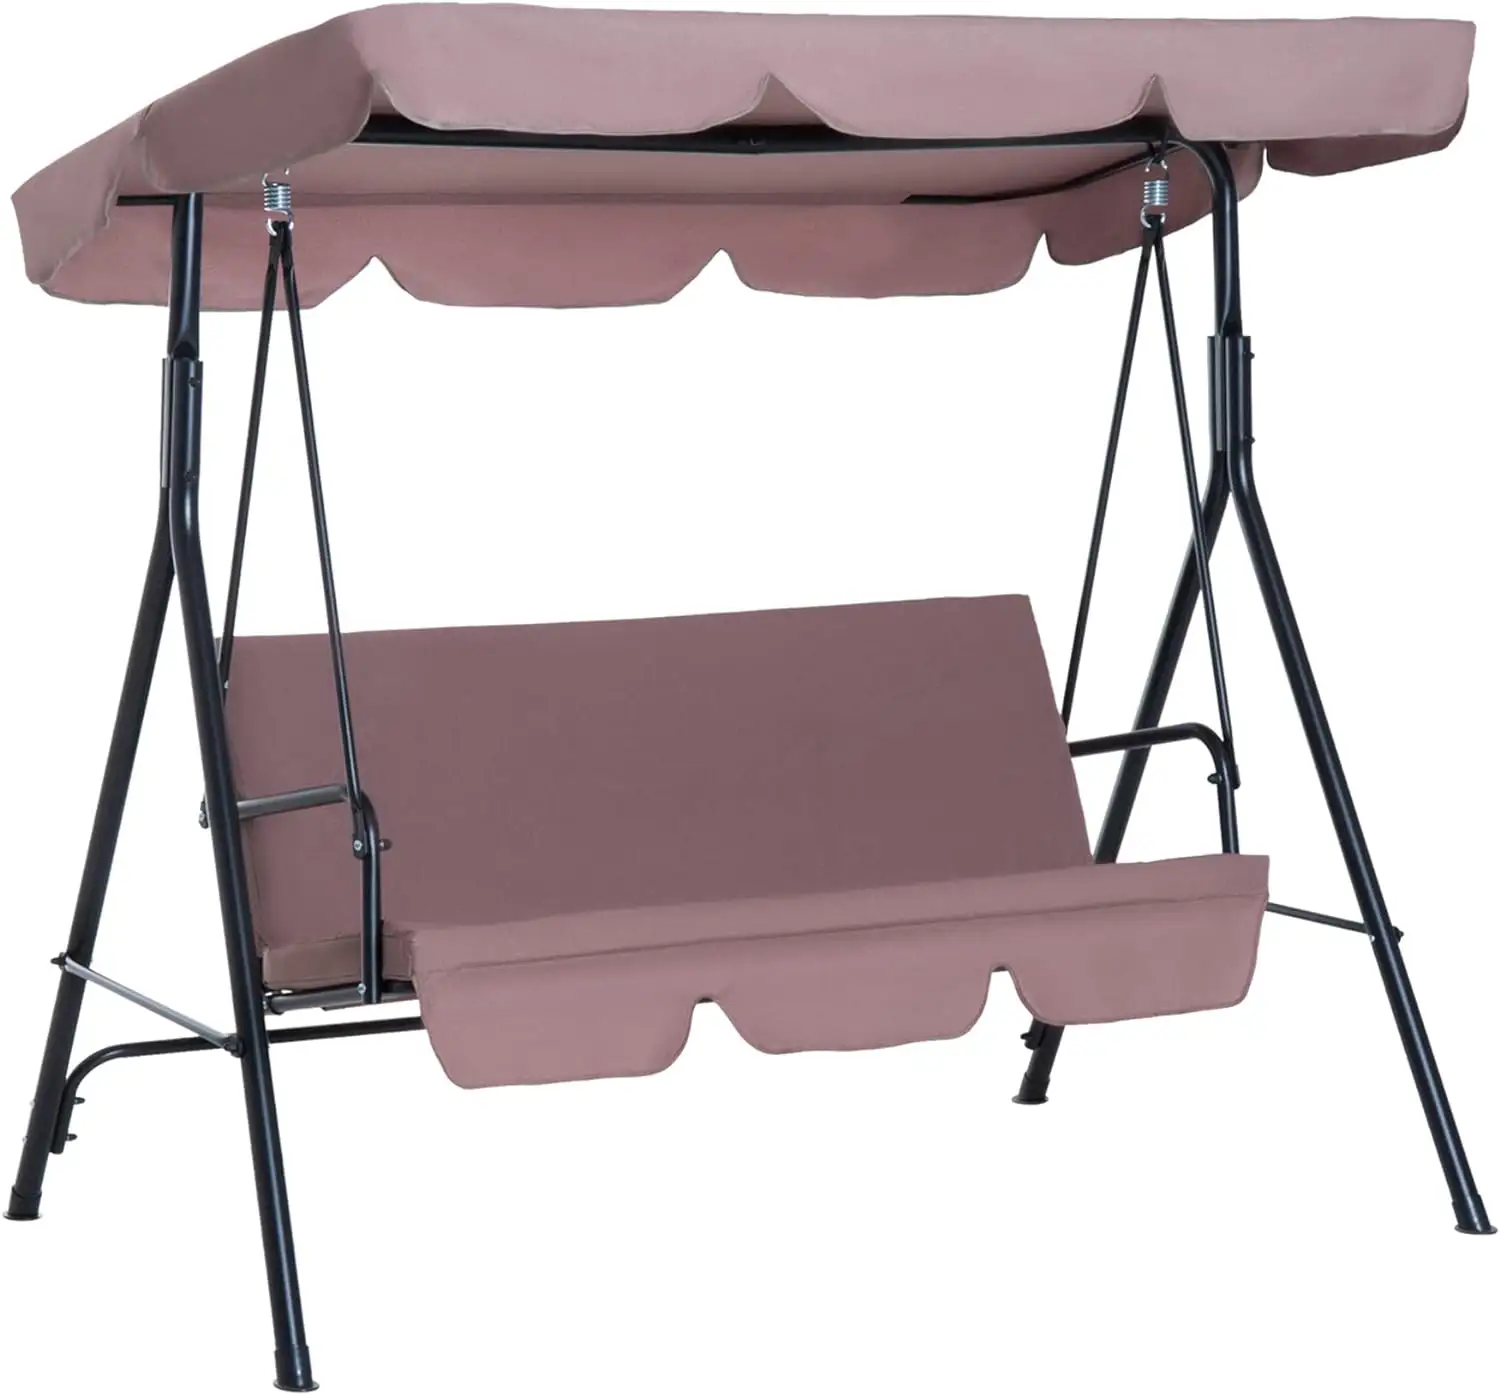 Patio Hoge Kwaliteit Schommel Stoel Cover Outdoor Camping Binnenplaats Hangmat Luifel